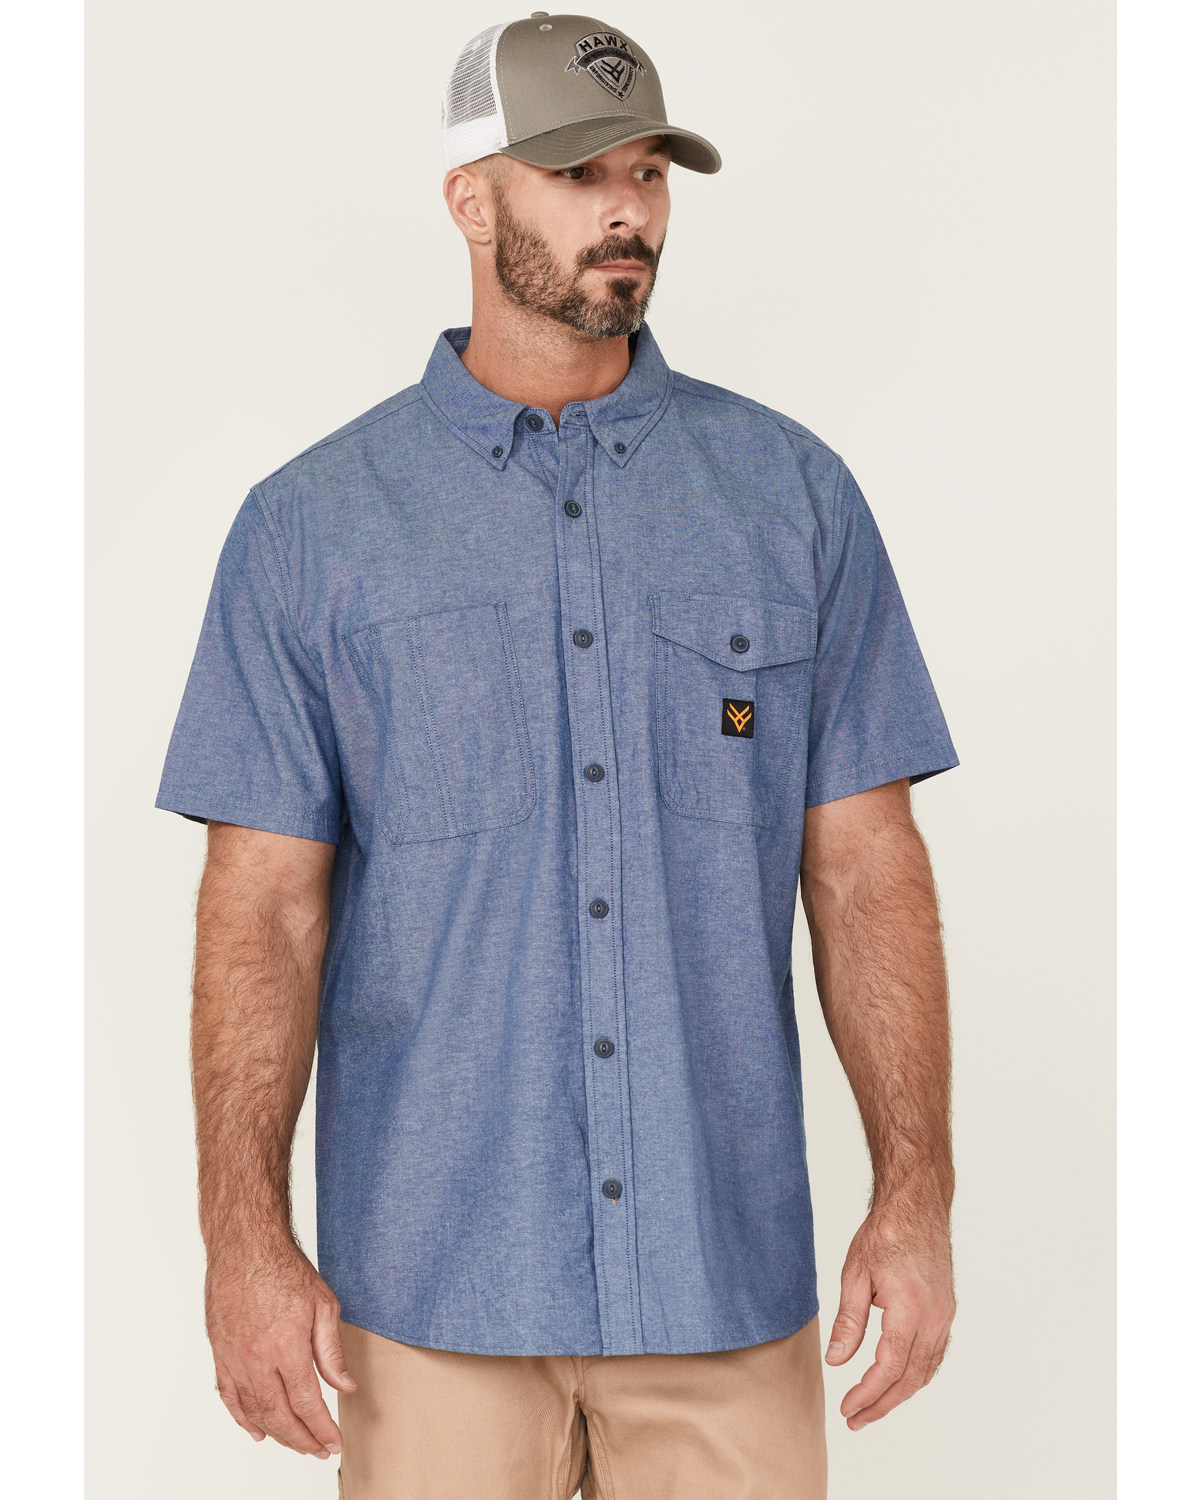 Hawx Men's Short Sleeve Button-Down Work Shirt